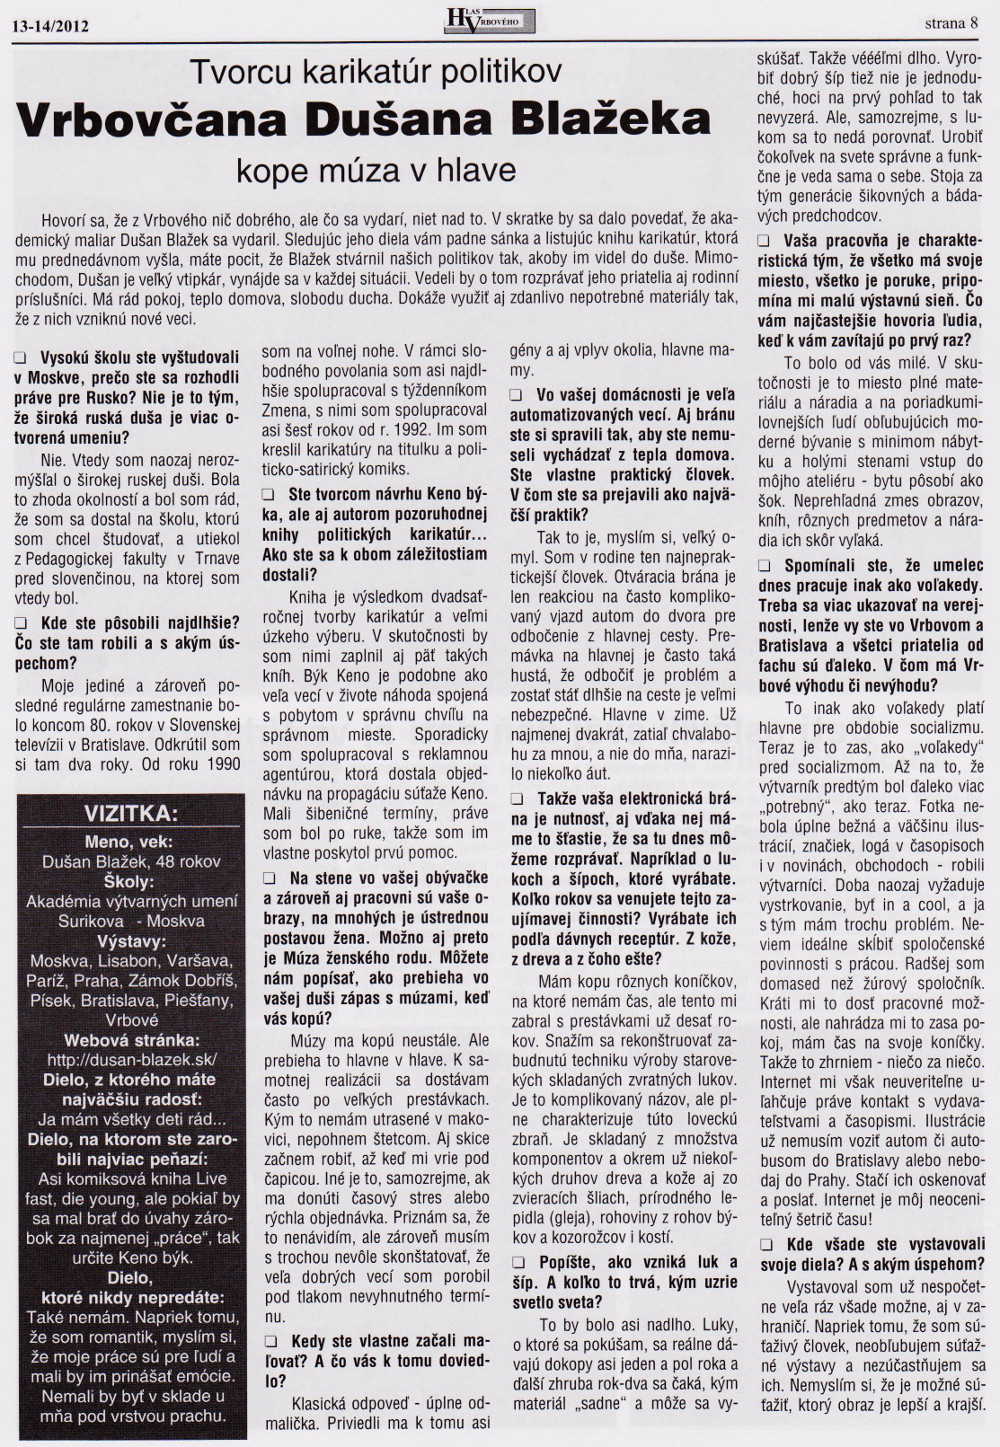 Hlas Vrbového 13-14/2012, strana 8